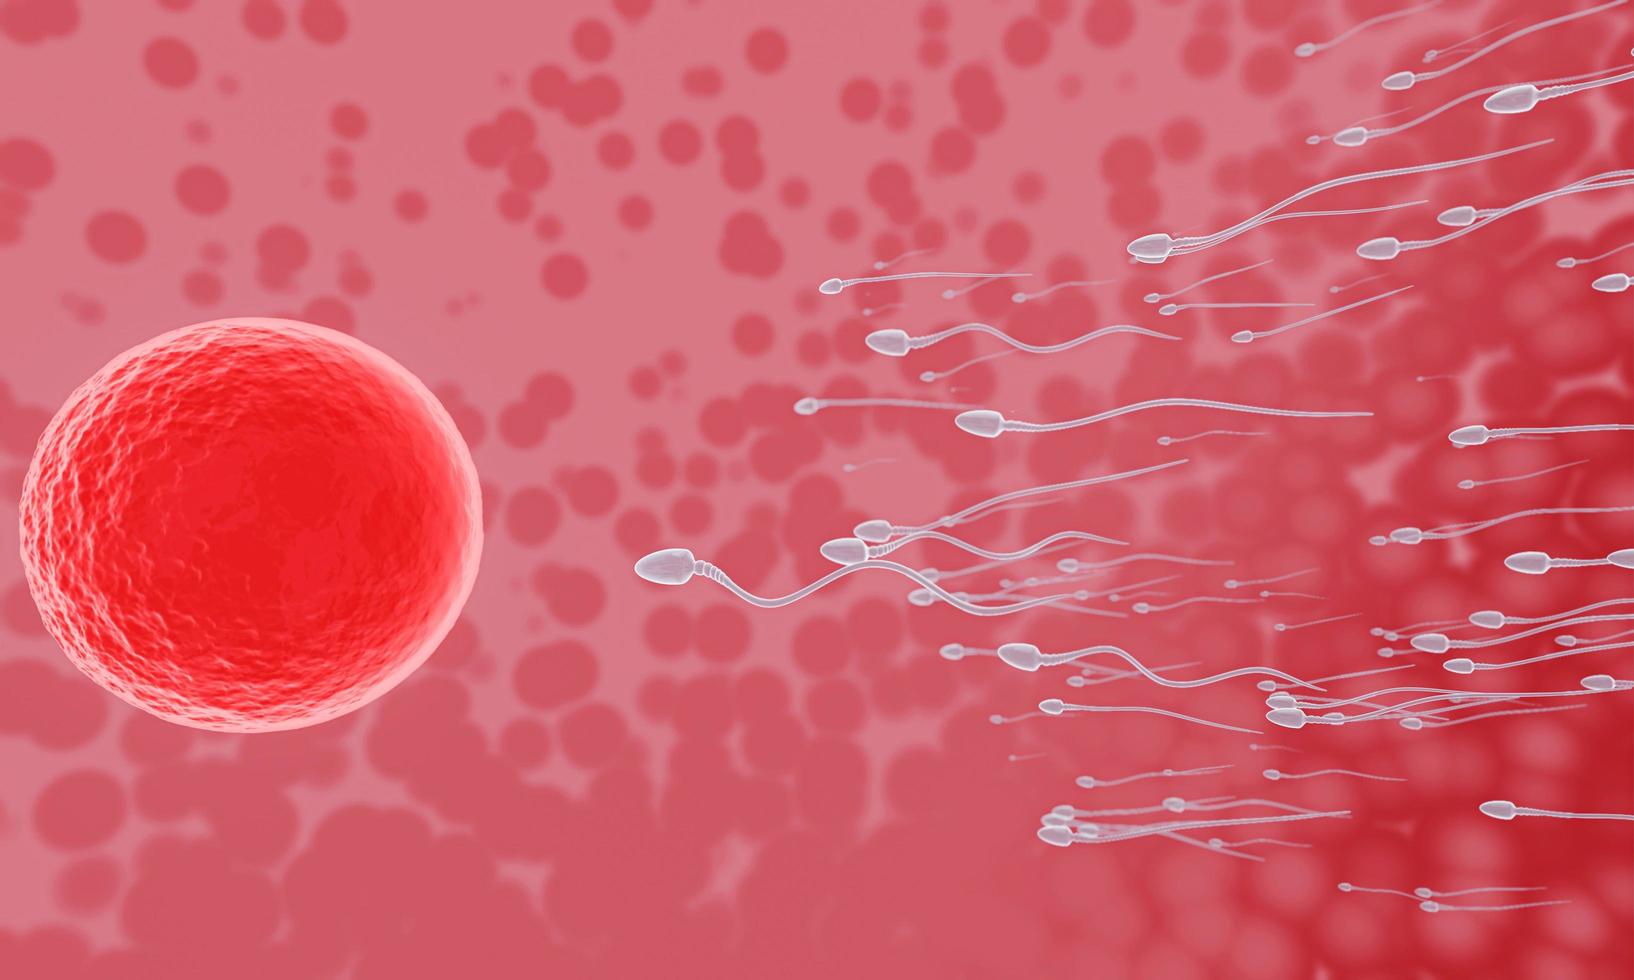 le sperme est dirigé vers l'ovule. faire l'accouplement humain. un modèle de pré-fécondation entre un ovule et un spermatozoïde. rendu 3d photo